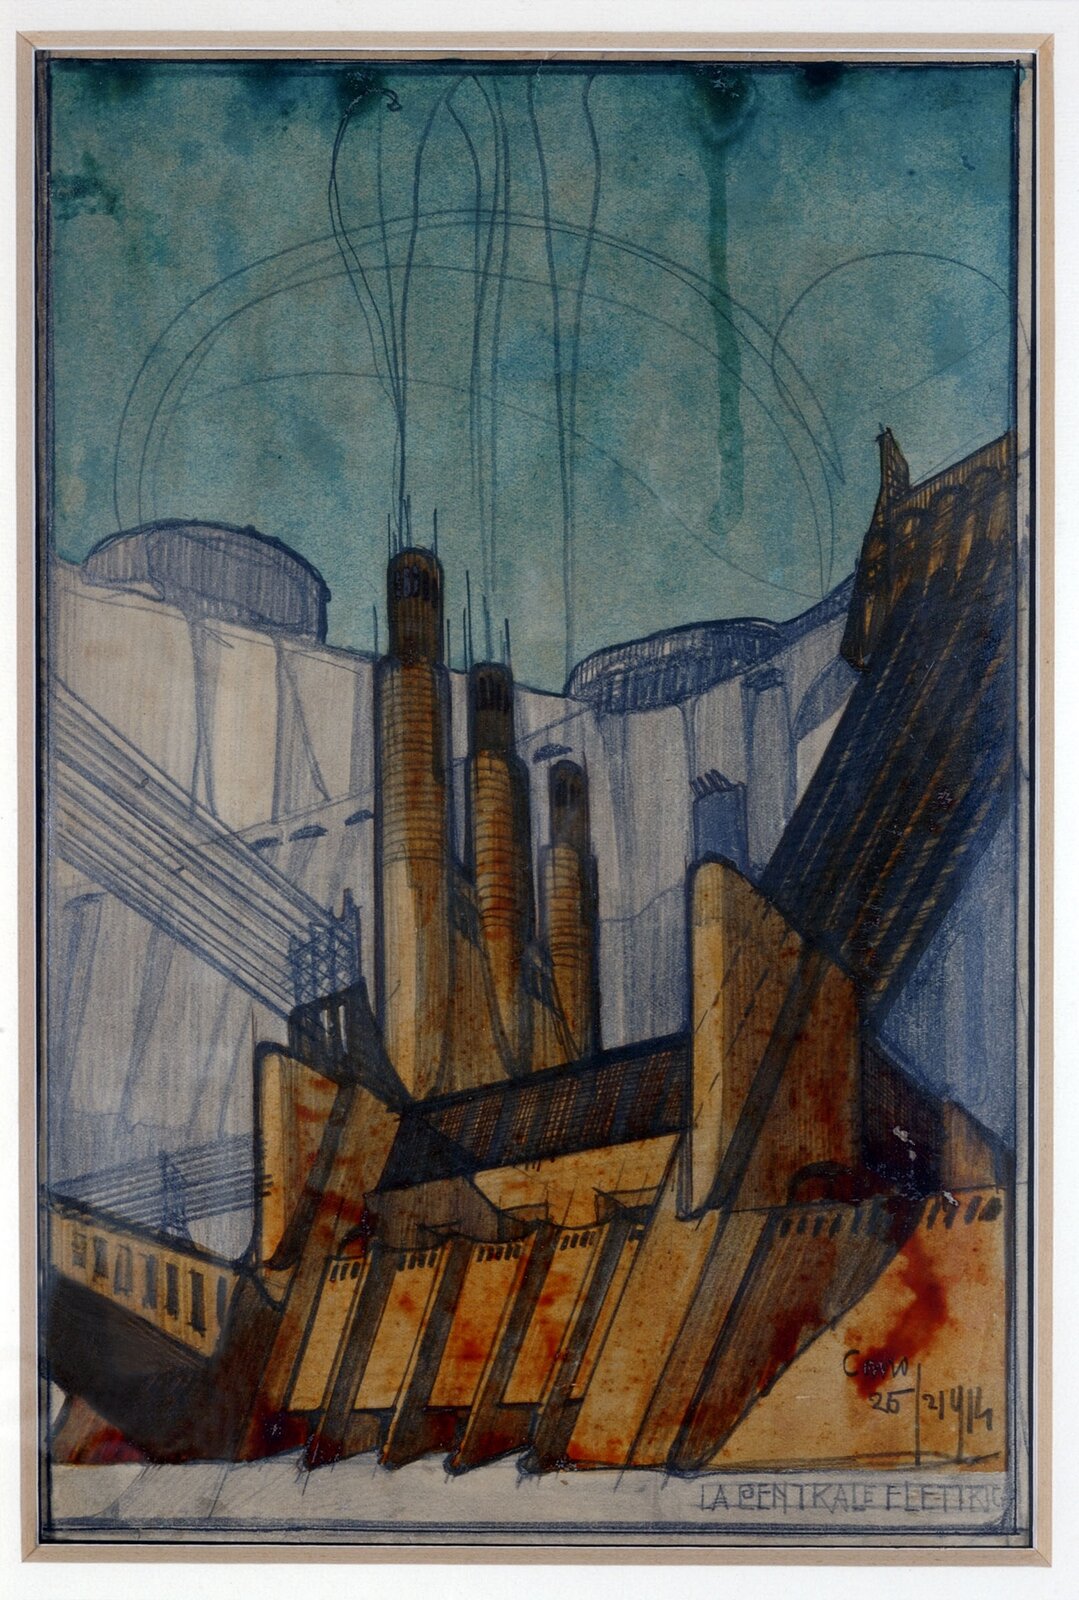 Ilustracja przedstawia obraz Antoniego Sant'Elia pt. „Projekt elektrowni”. Na obrazie mieści się projekt elektrowni. Duży budynek z licznymi kominami. Ilustracja jest w odcieniach beżu i brązu.